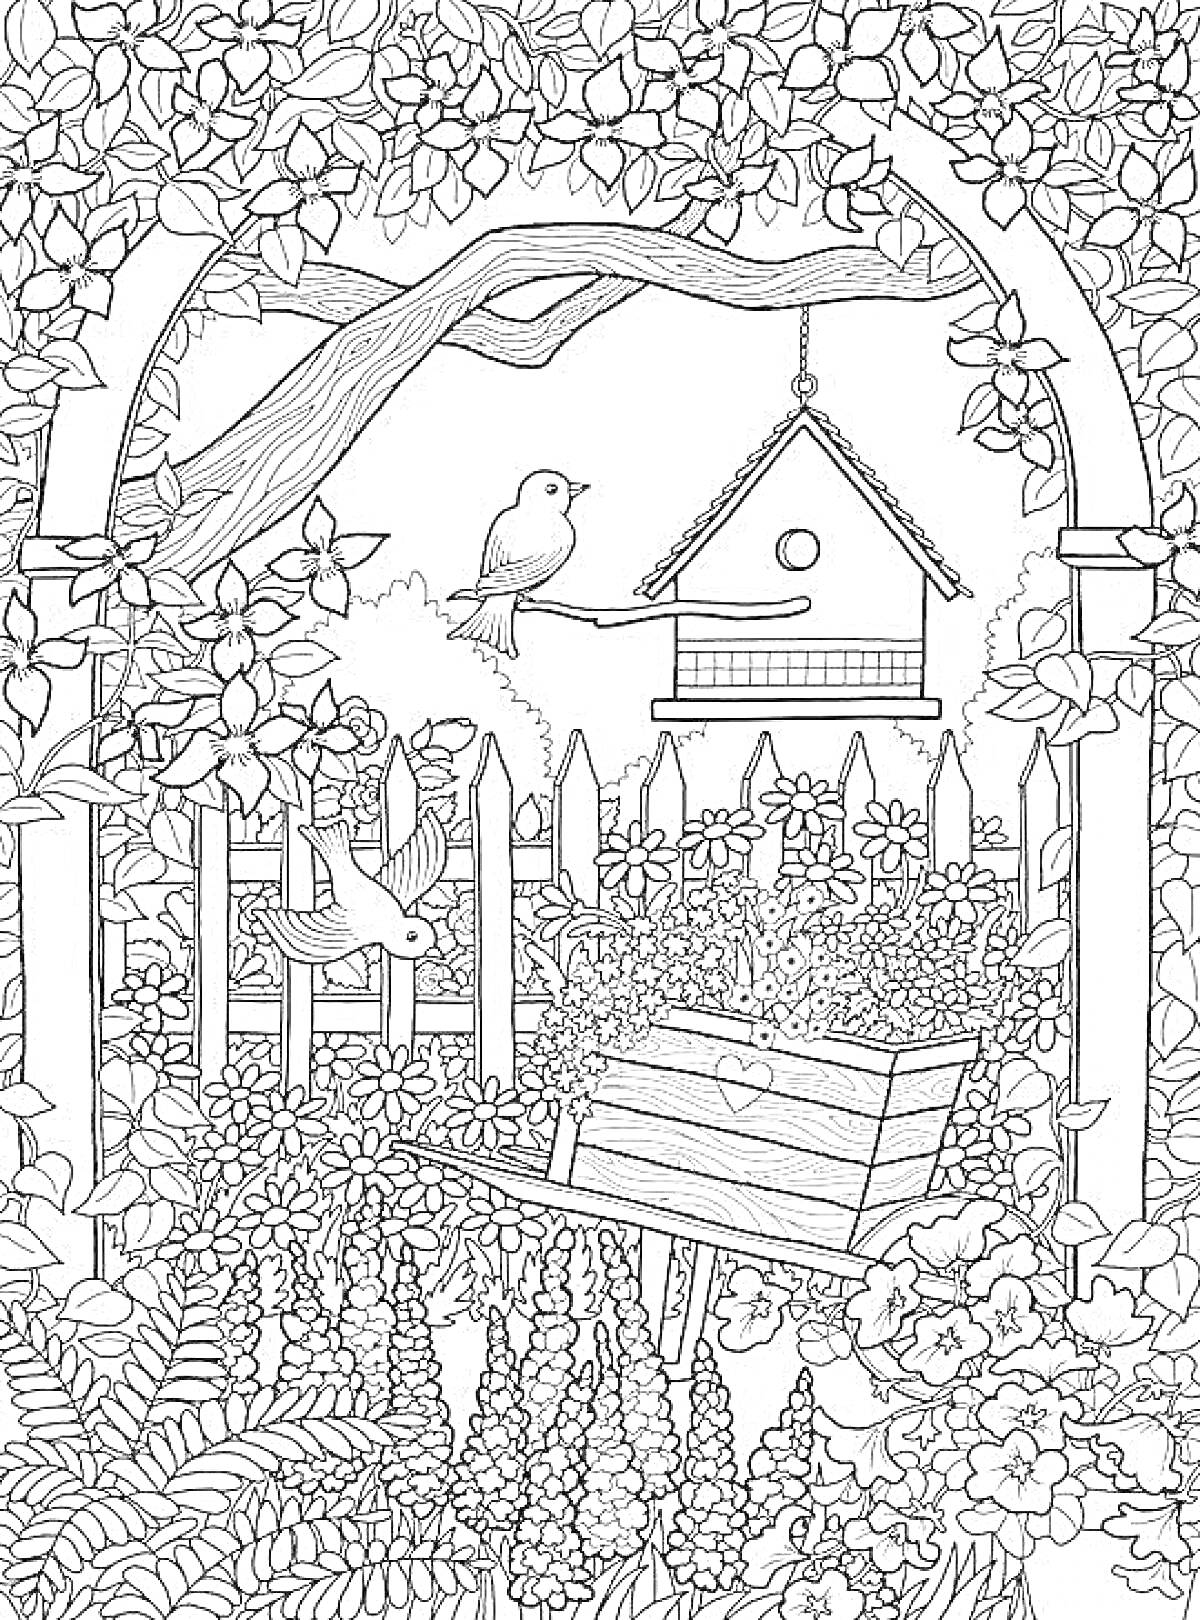 Раскраска Садовая сцена с деревом, лавочкой, домиком для птиц, цветами и растениями